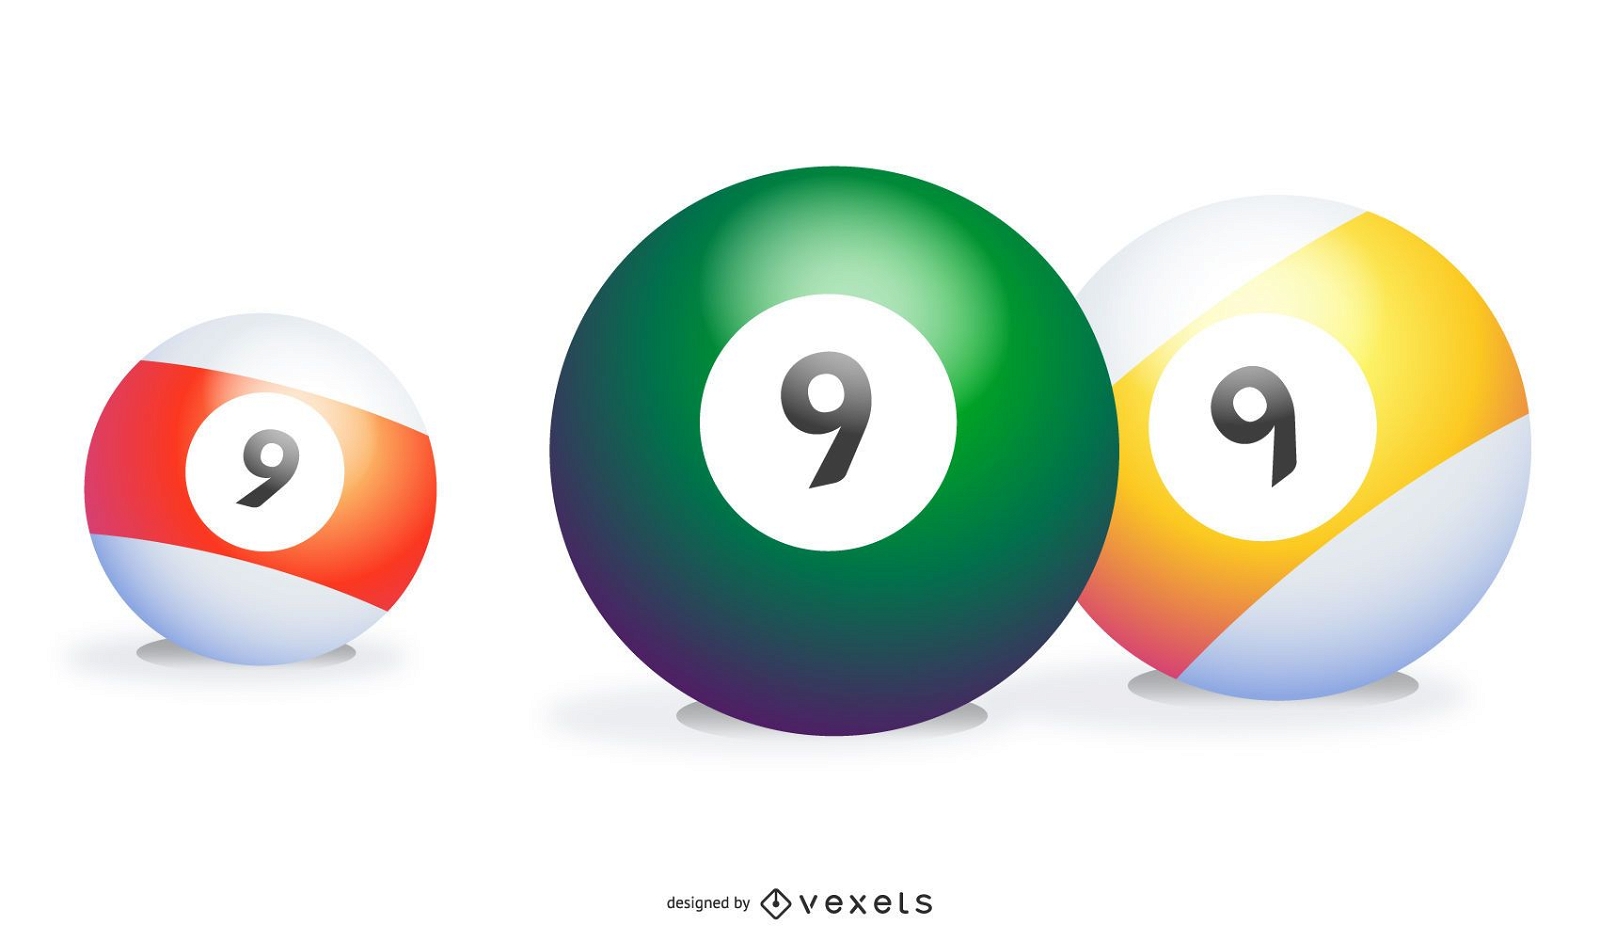 Tr?s 9 bolas em cores diferentes